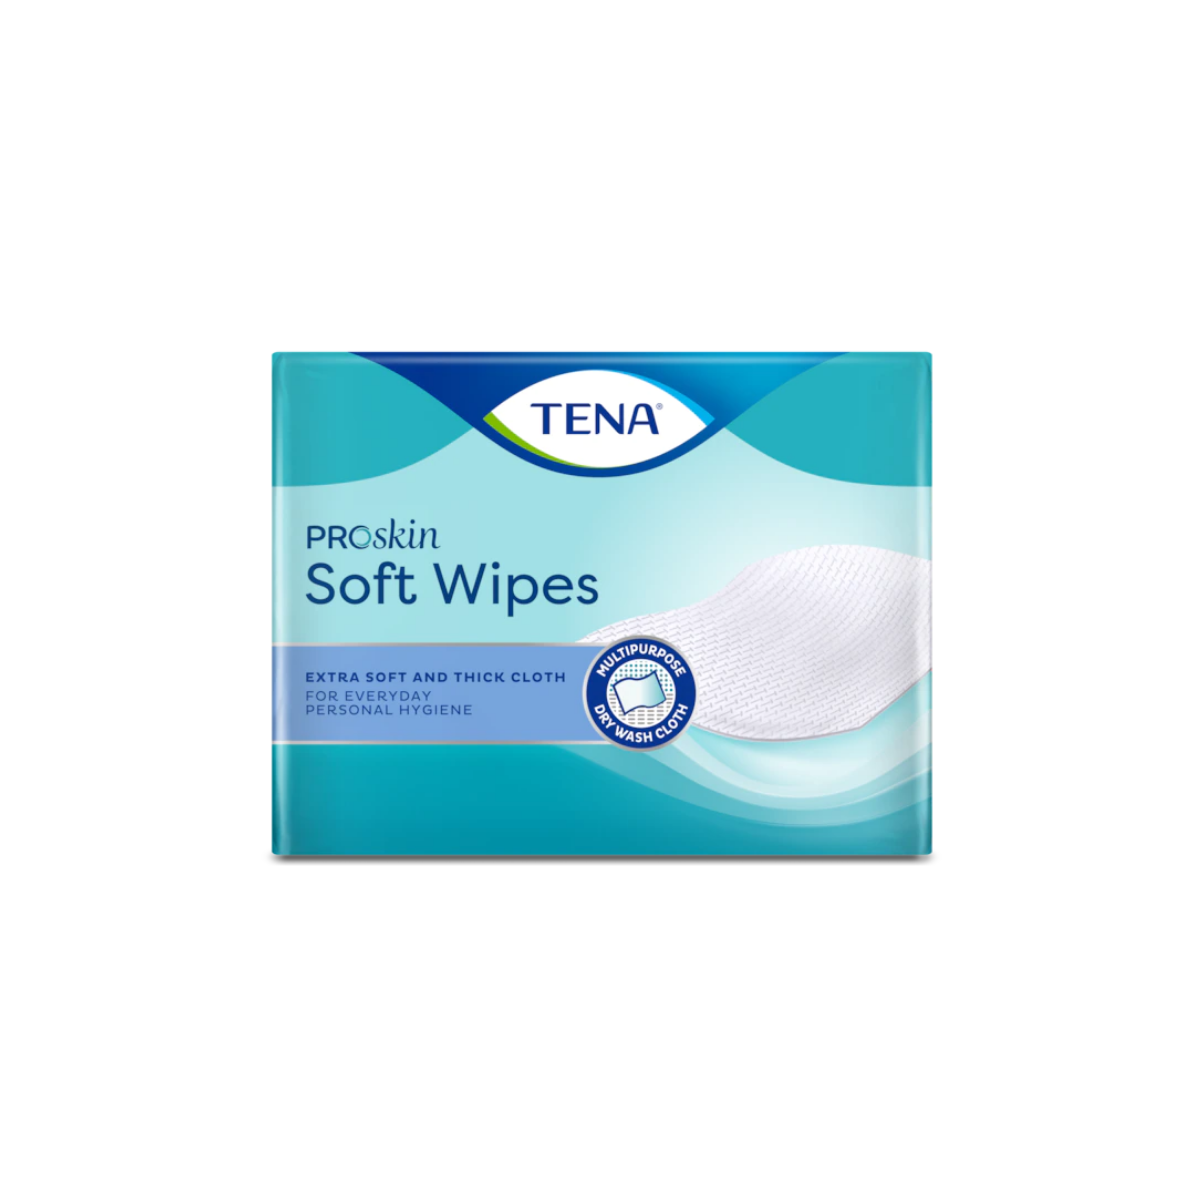 TENA ProSkin Soft Wipes